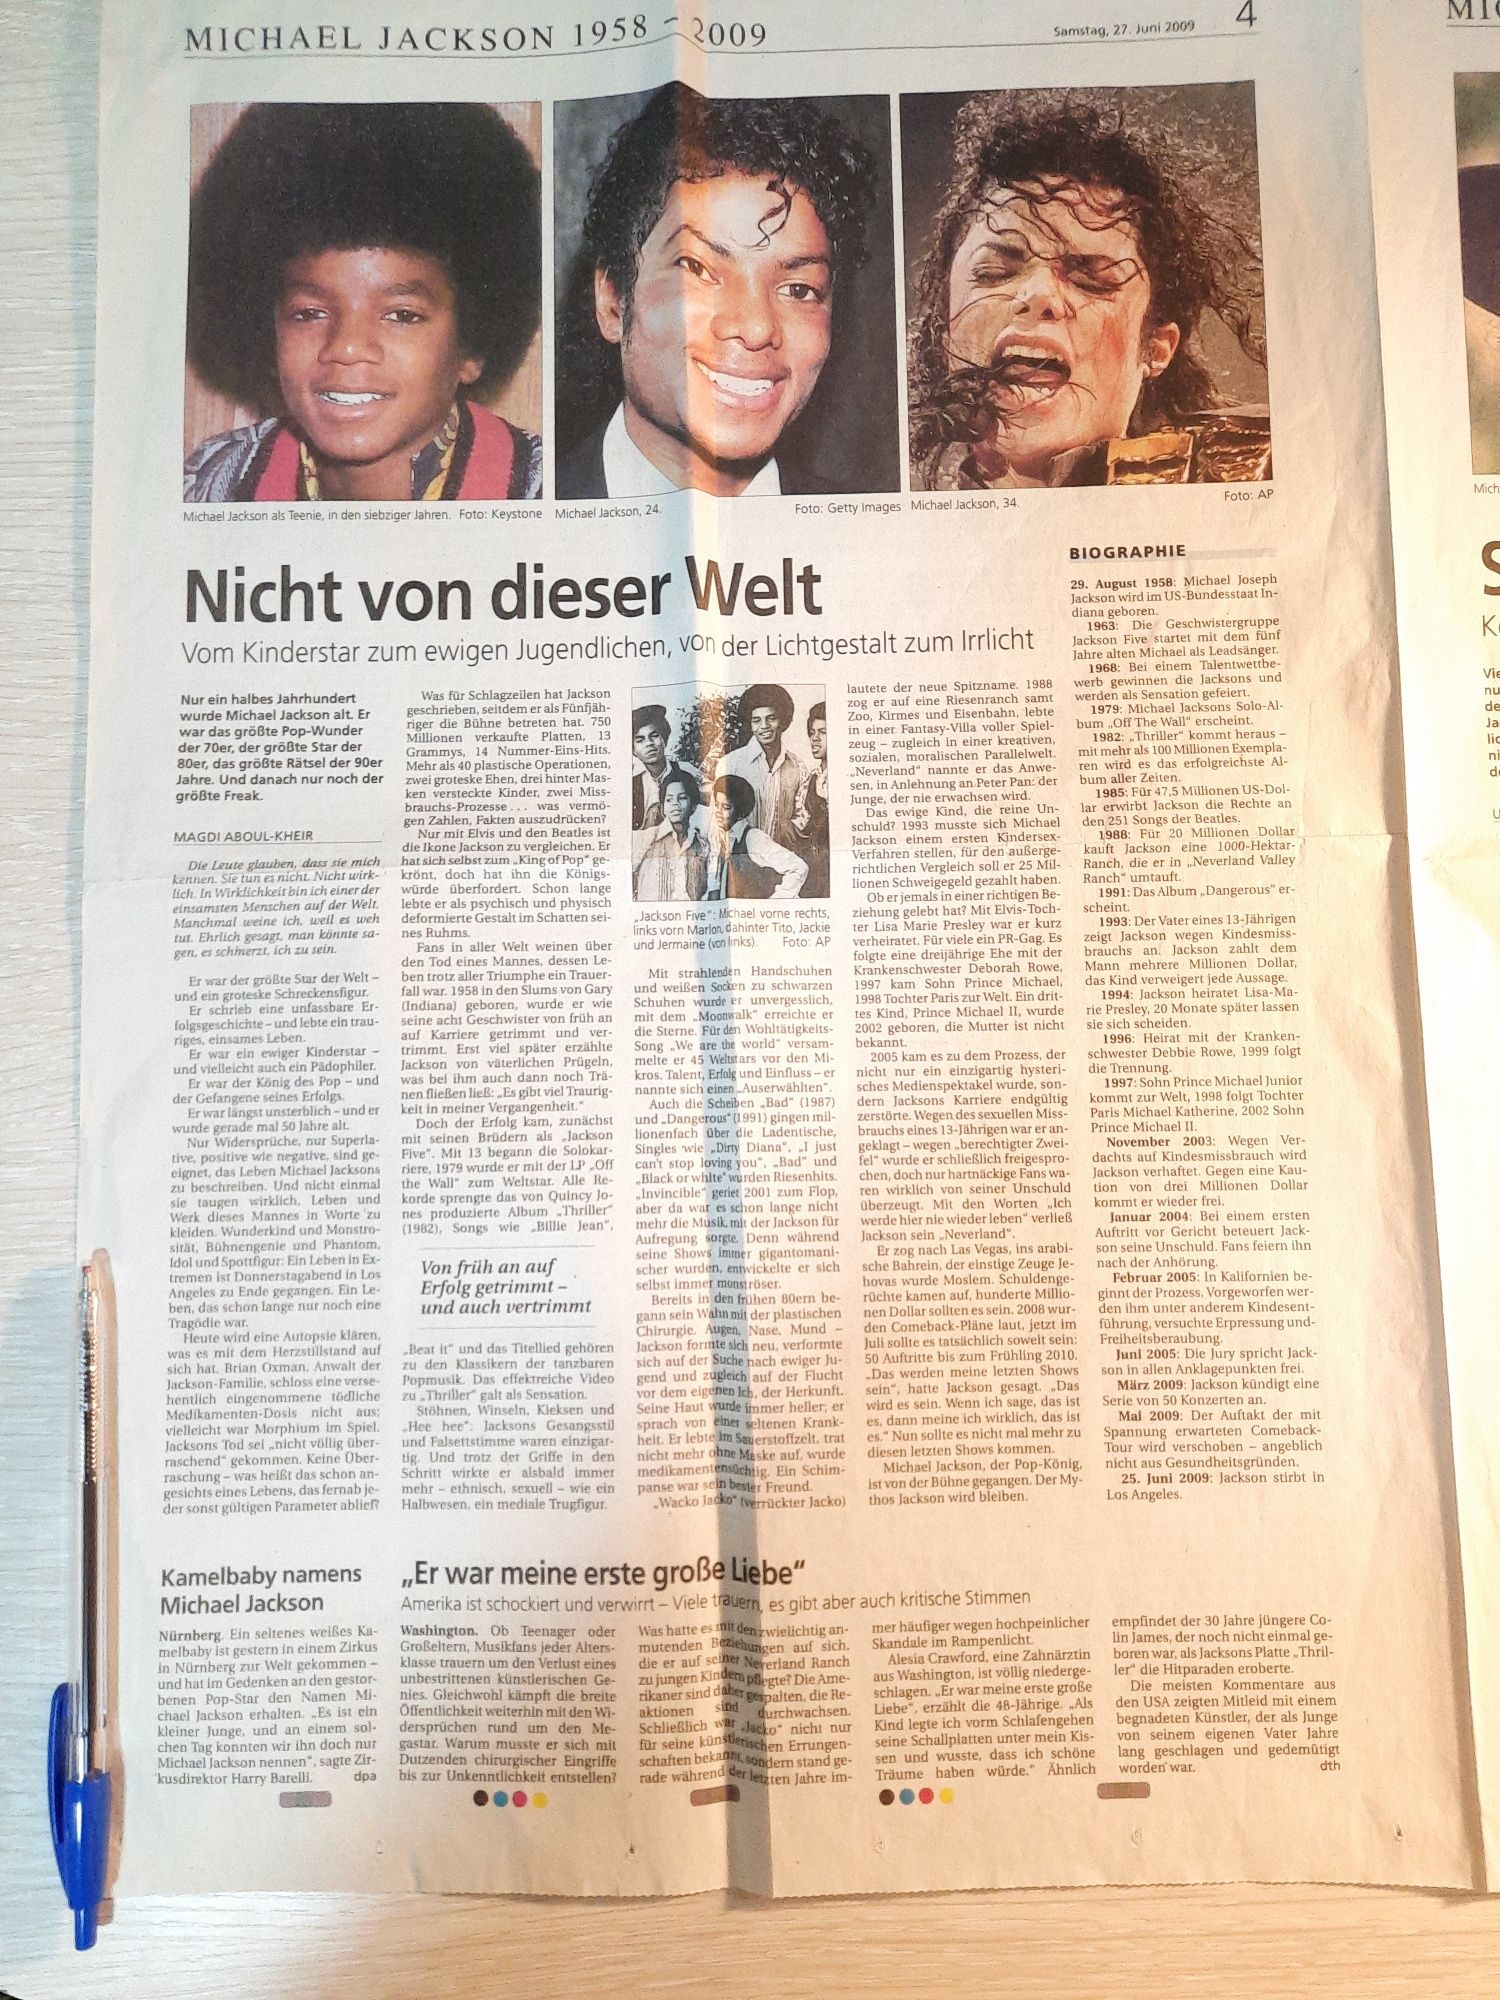 Разворот Германской газеты сообщ.о кончине Майкла Джексона 2009г.